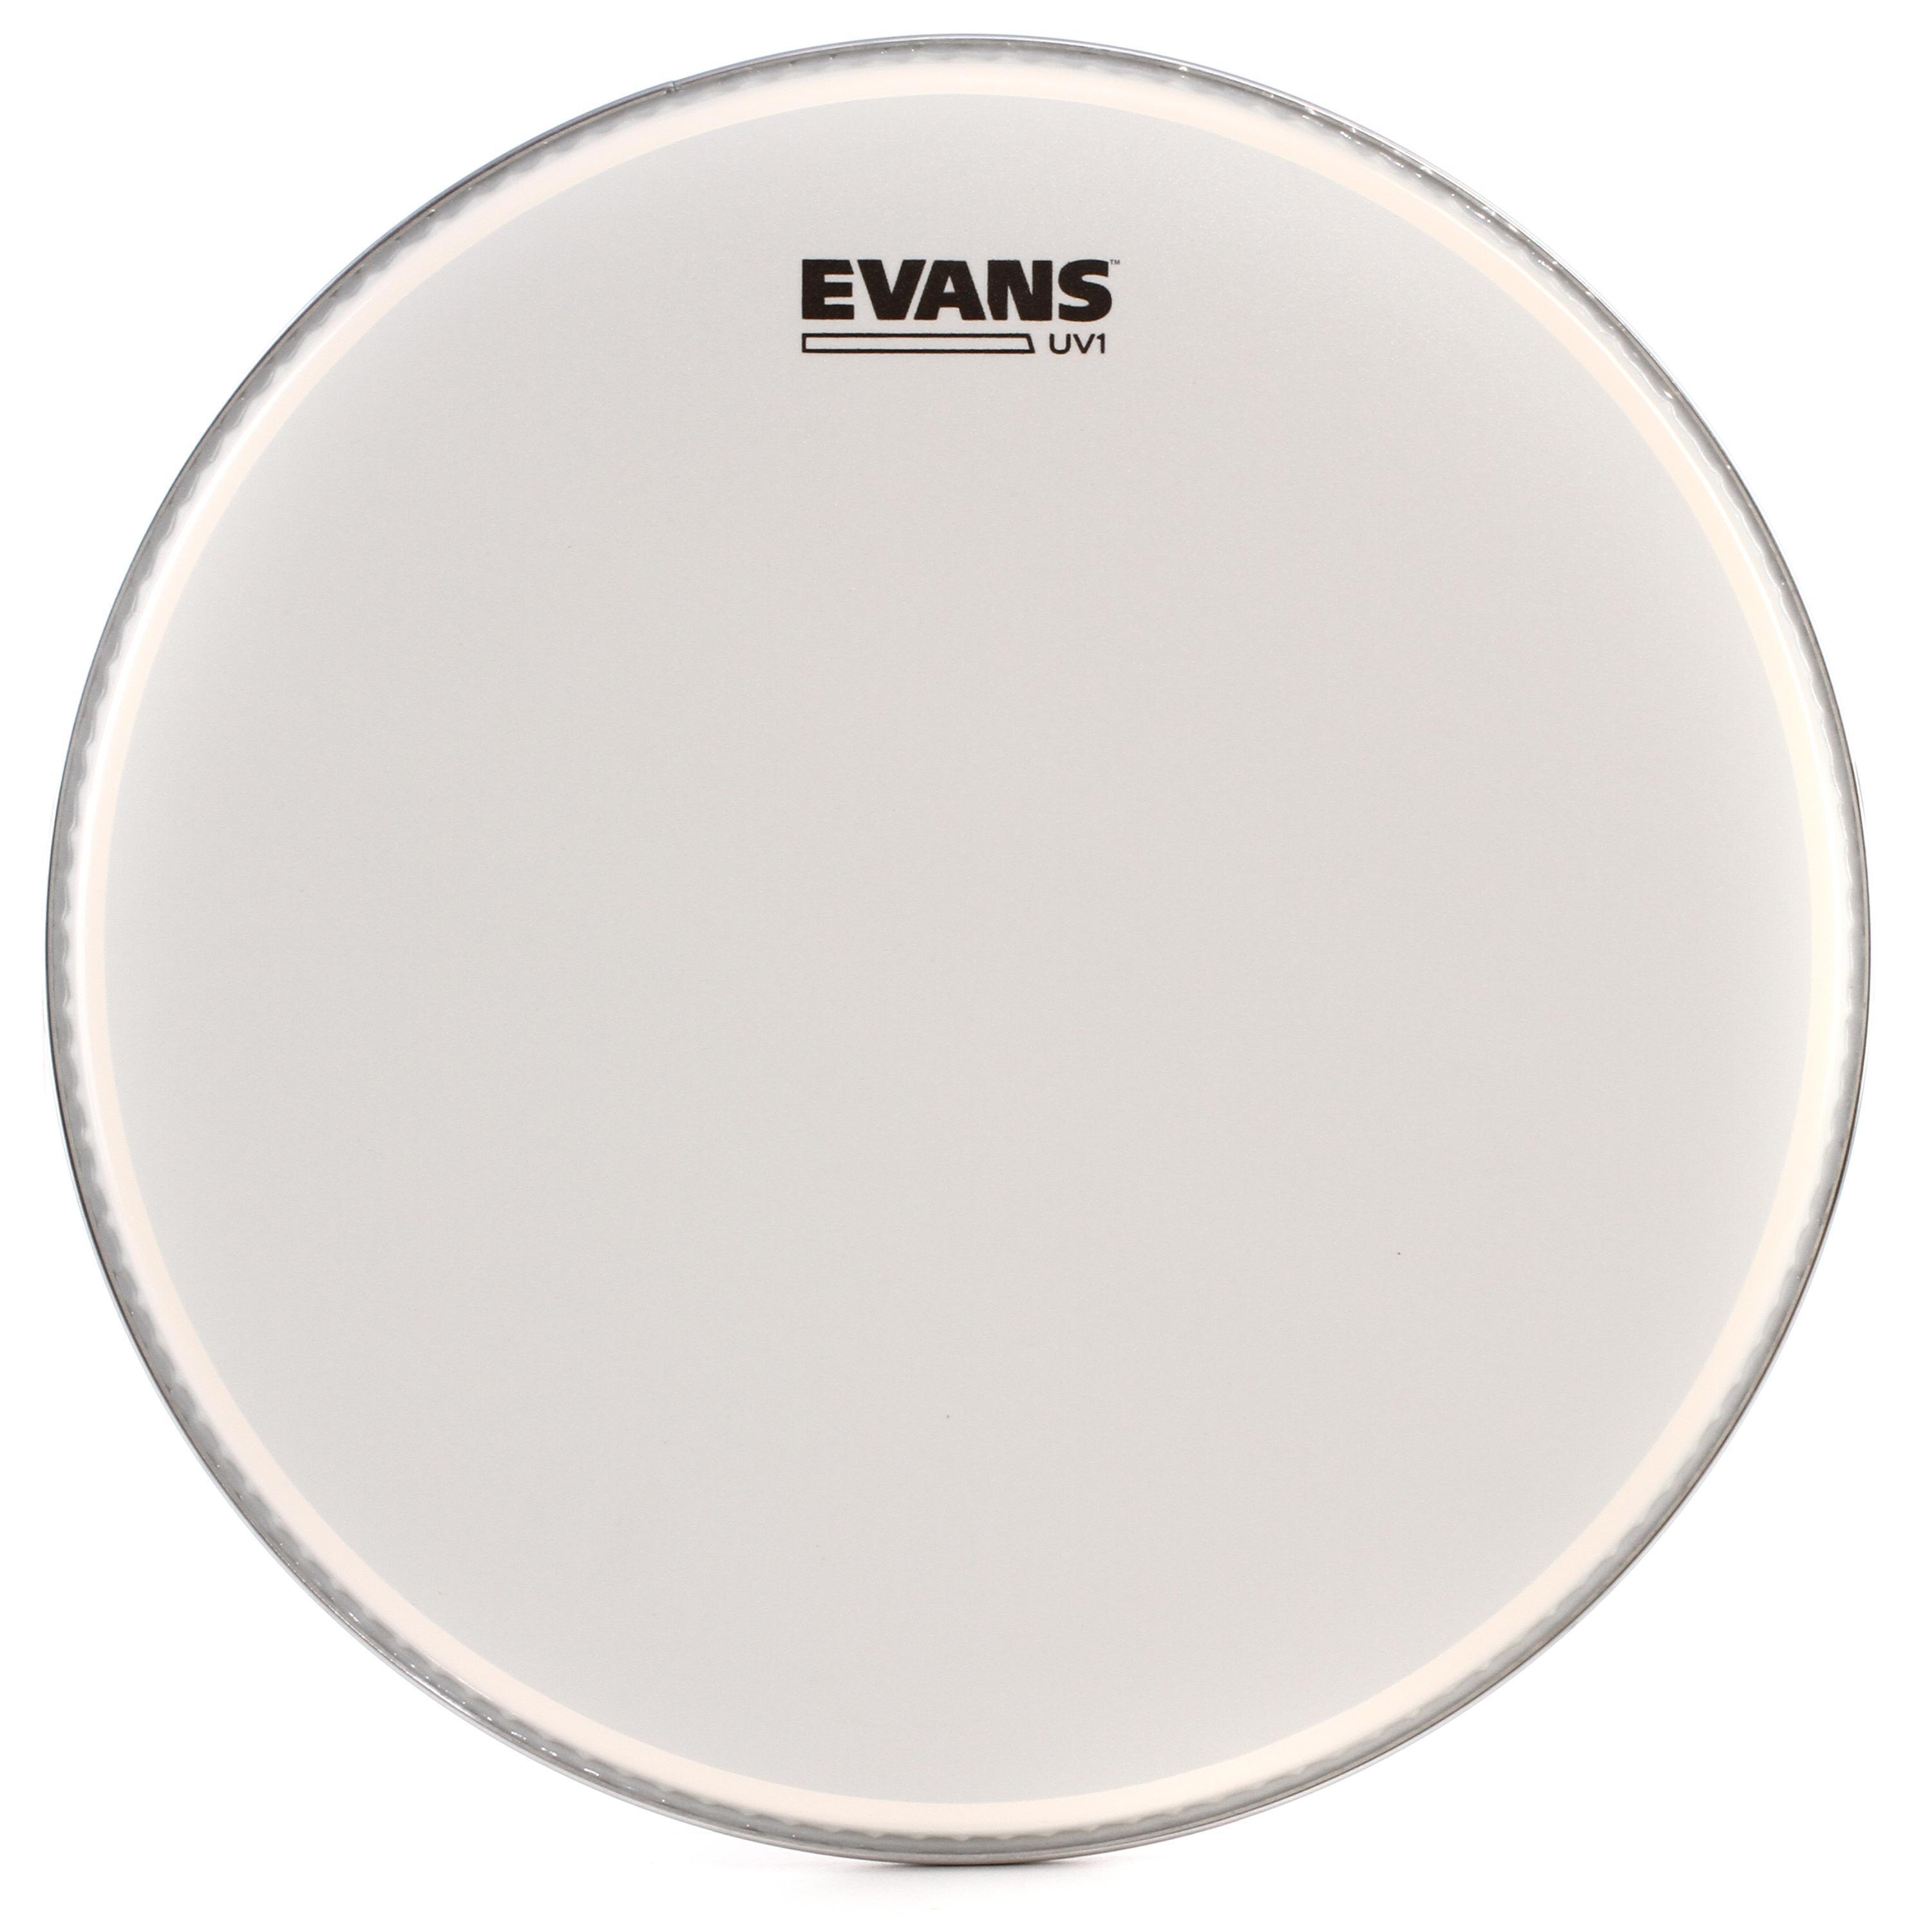 Bundled Item: Evans UV1 Coated Drumhead - 14 inch